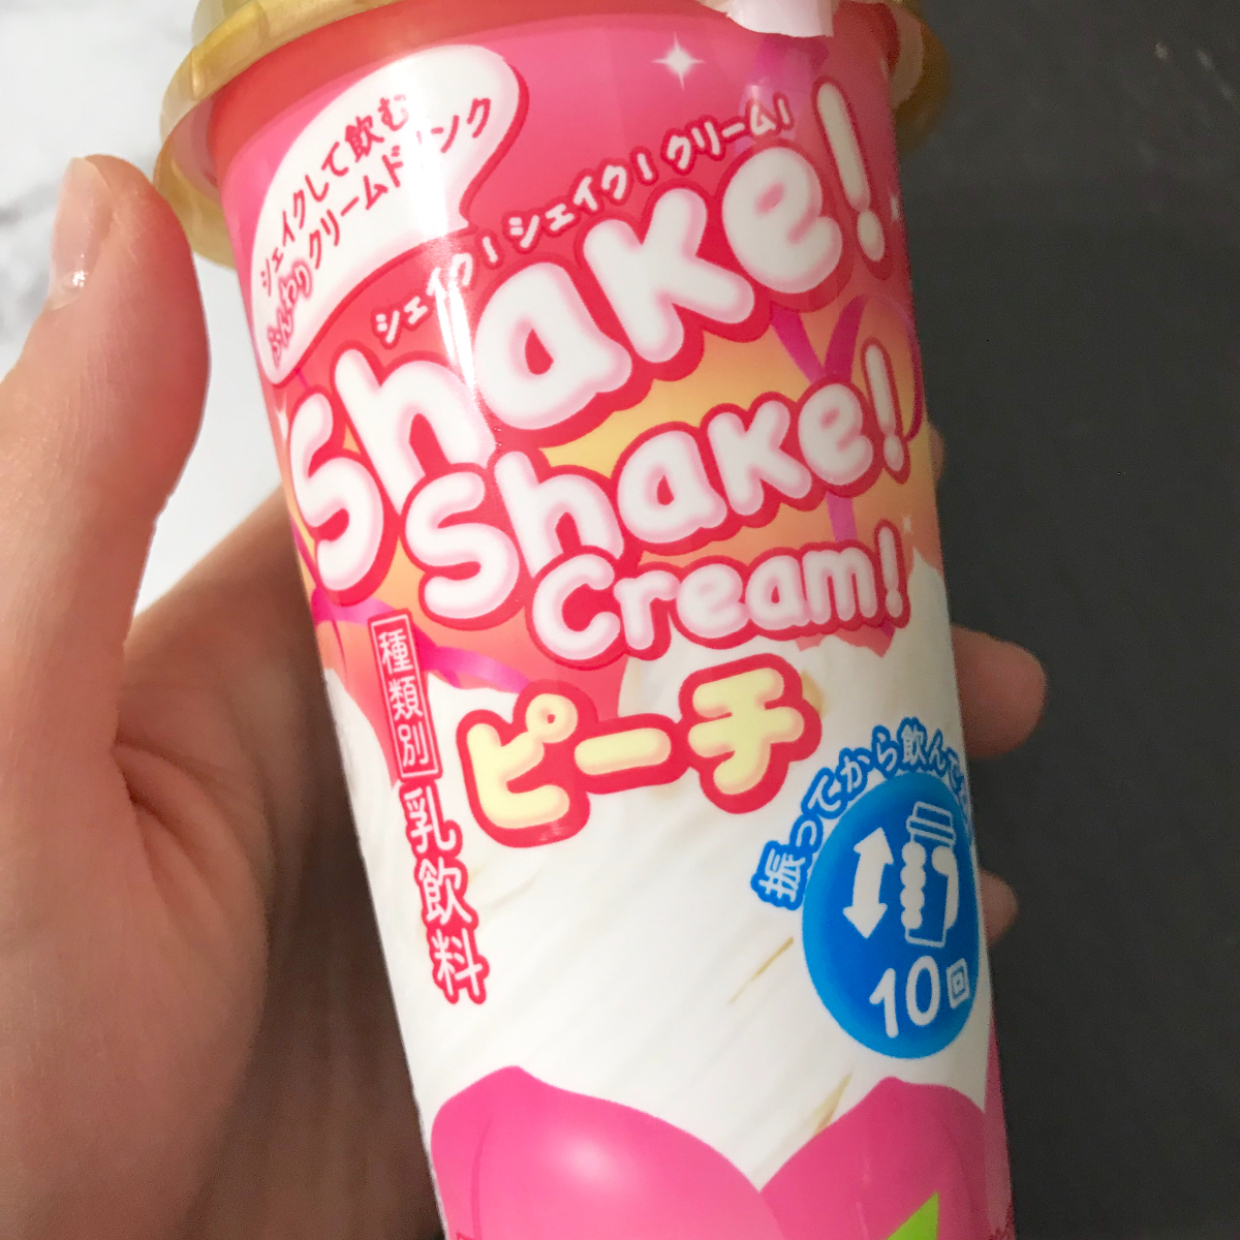  【ファミマ】大人気の飲む生クリーム「Shake！Shake！Cream！」からピーチ味が限定で登場！ 